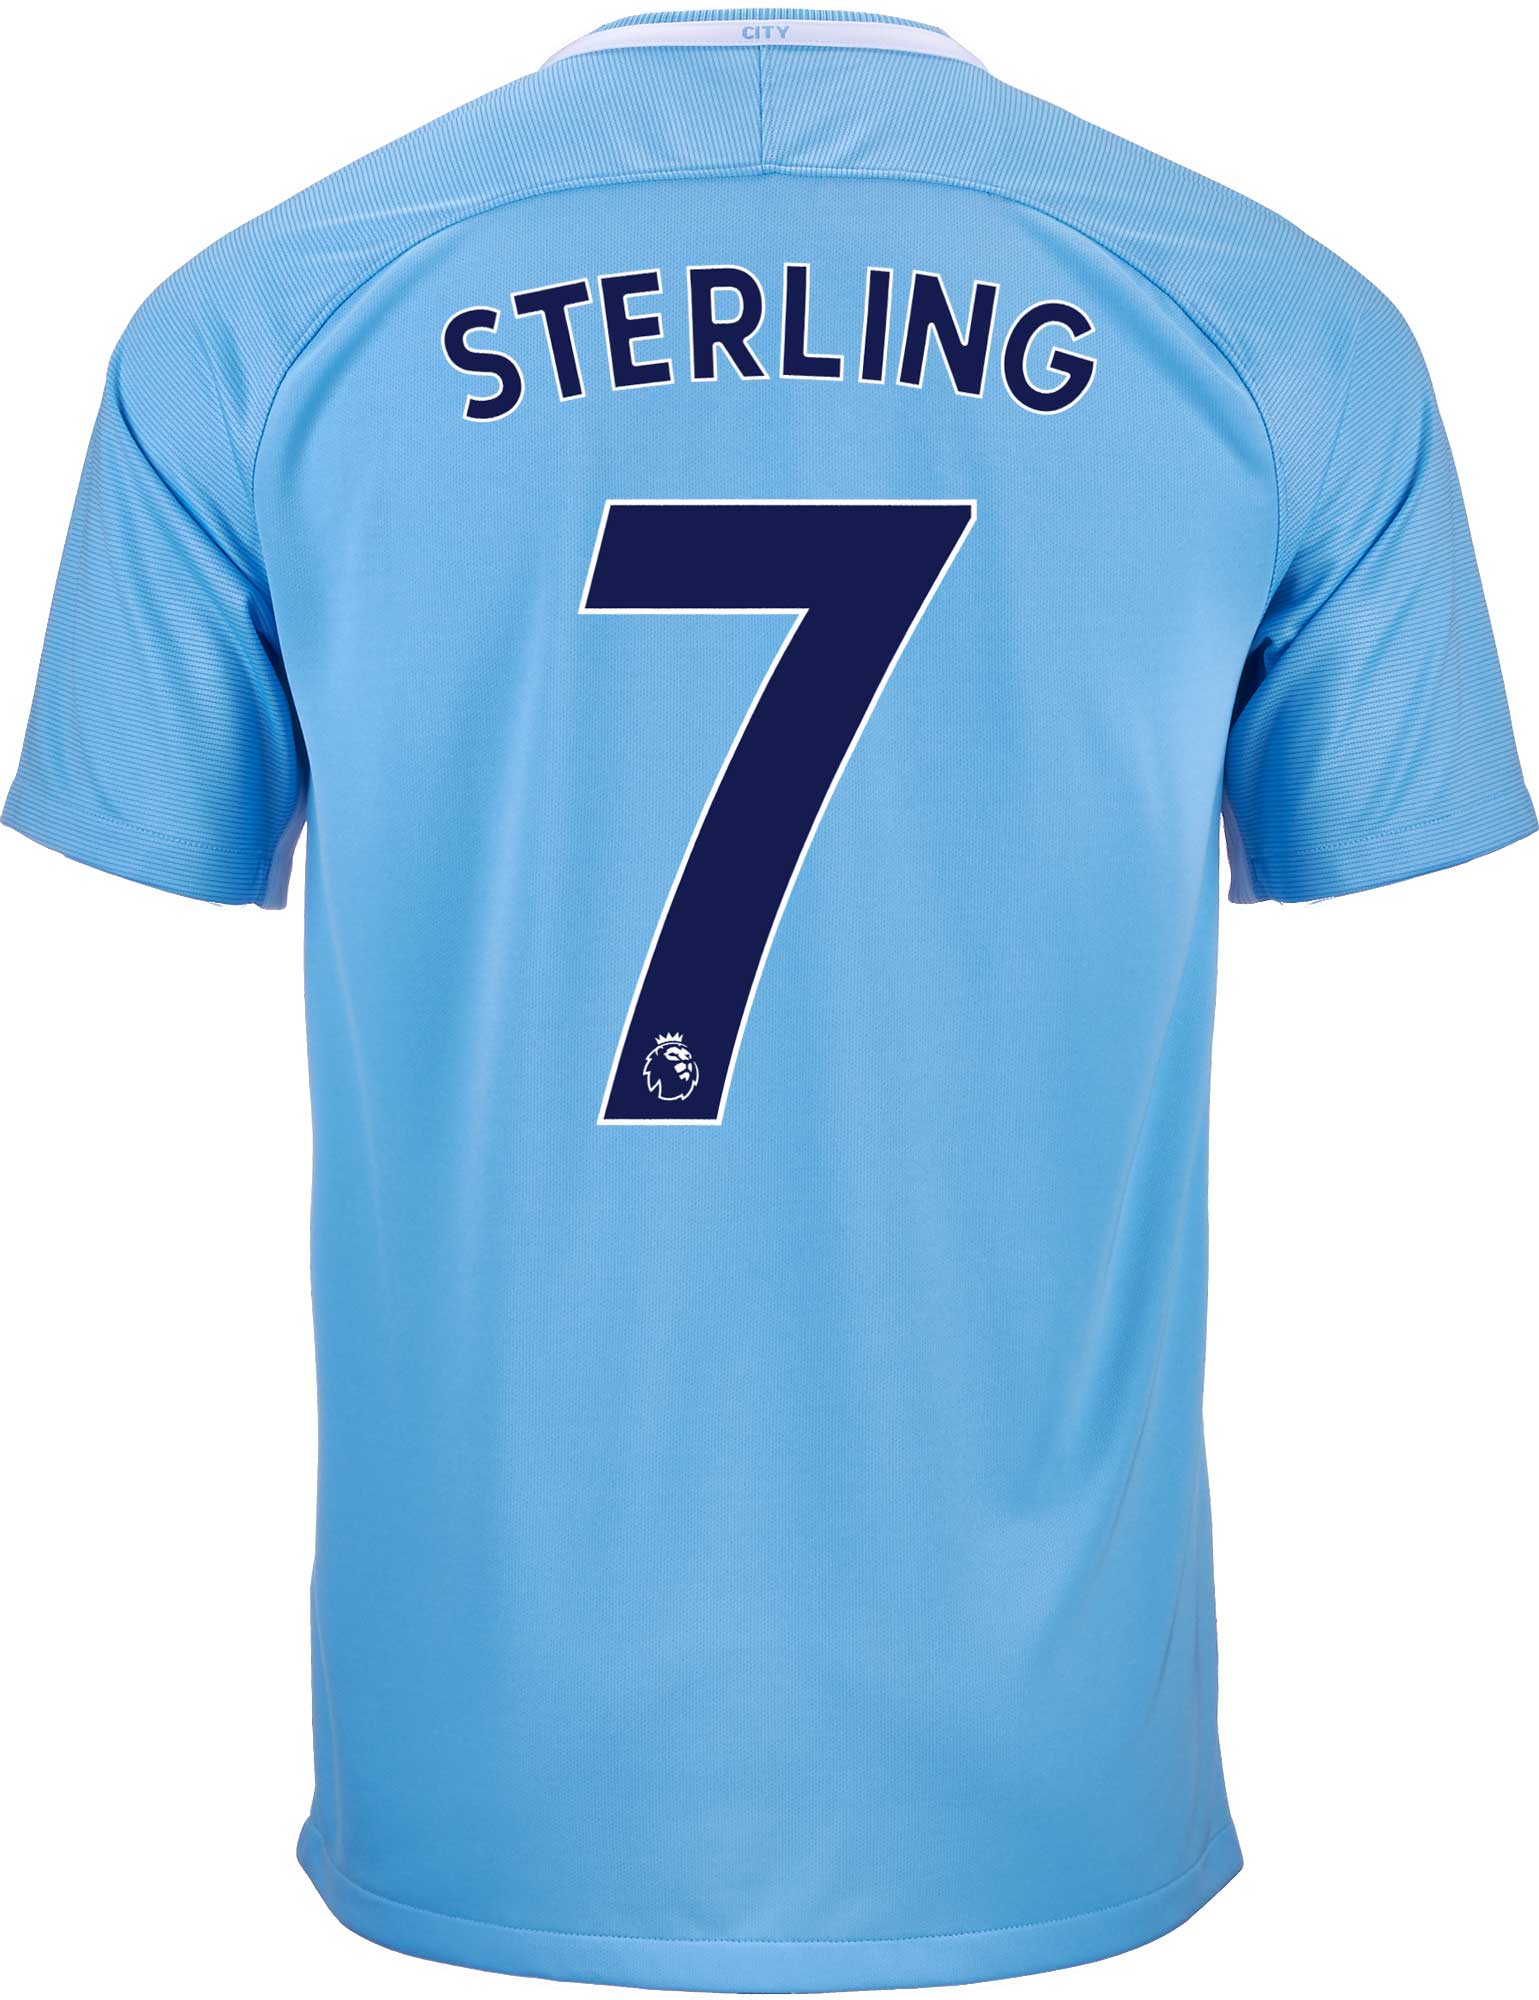 sterling shepard jersey